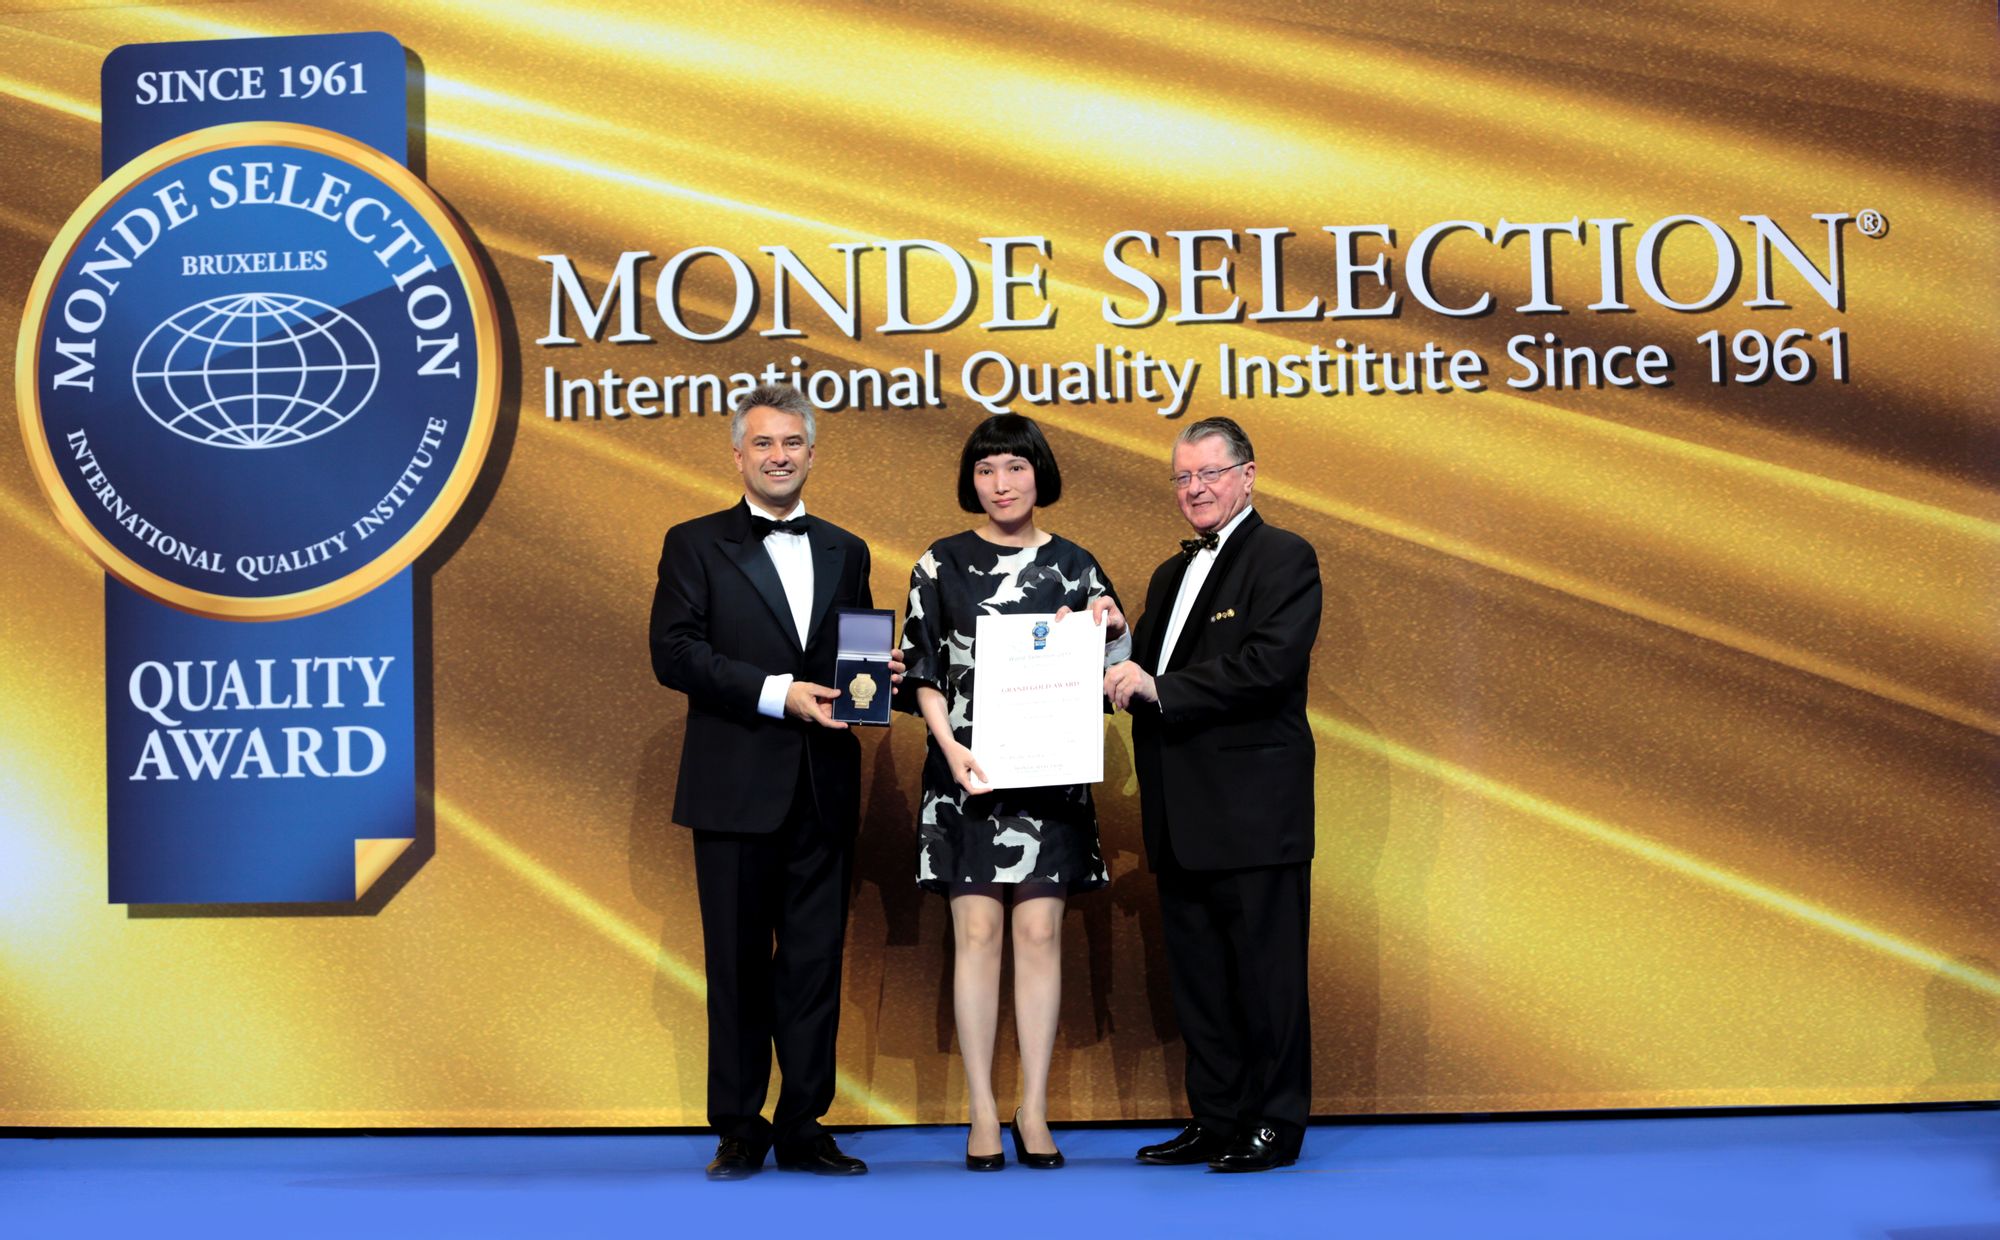 榮獲2013年MONDE SELECTION特別金獎